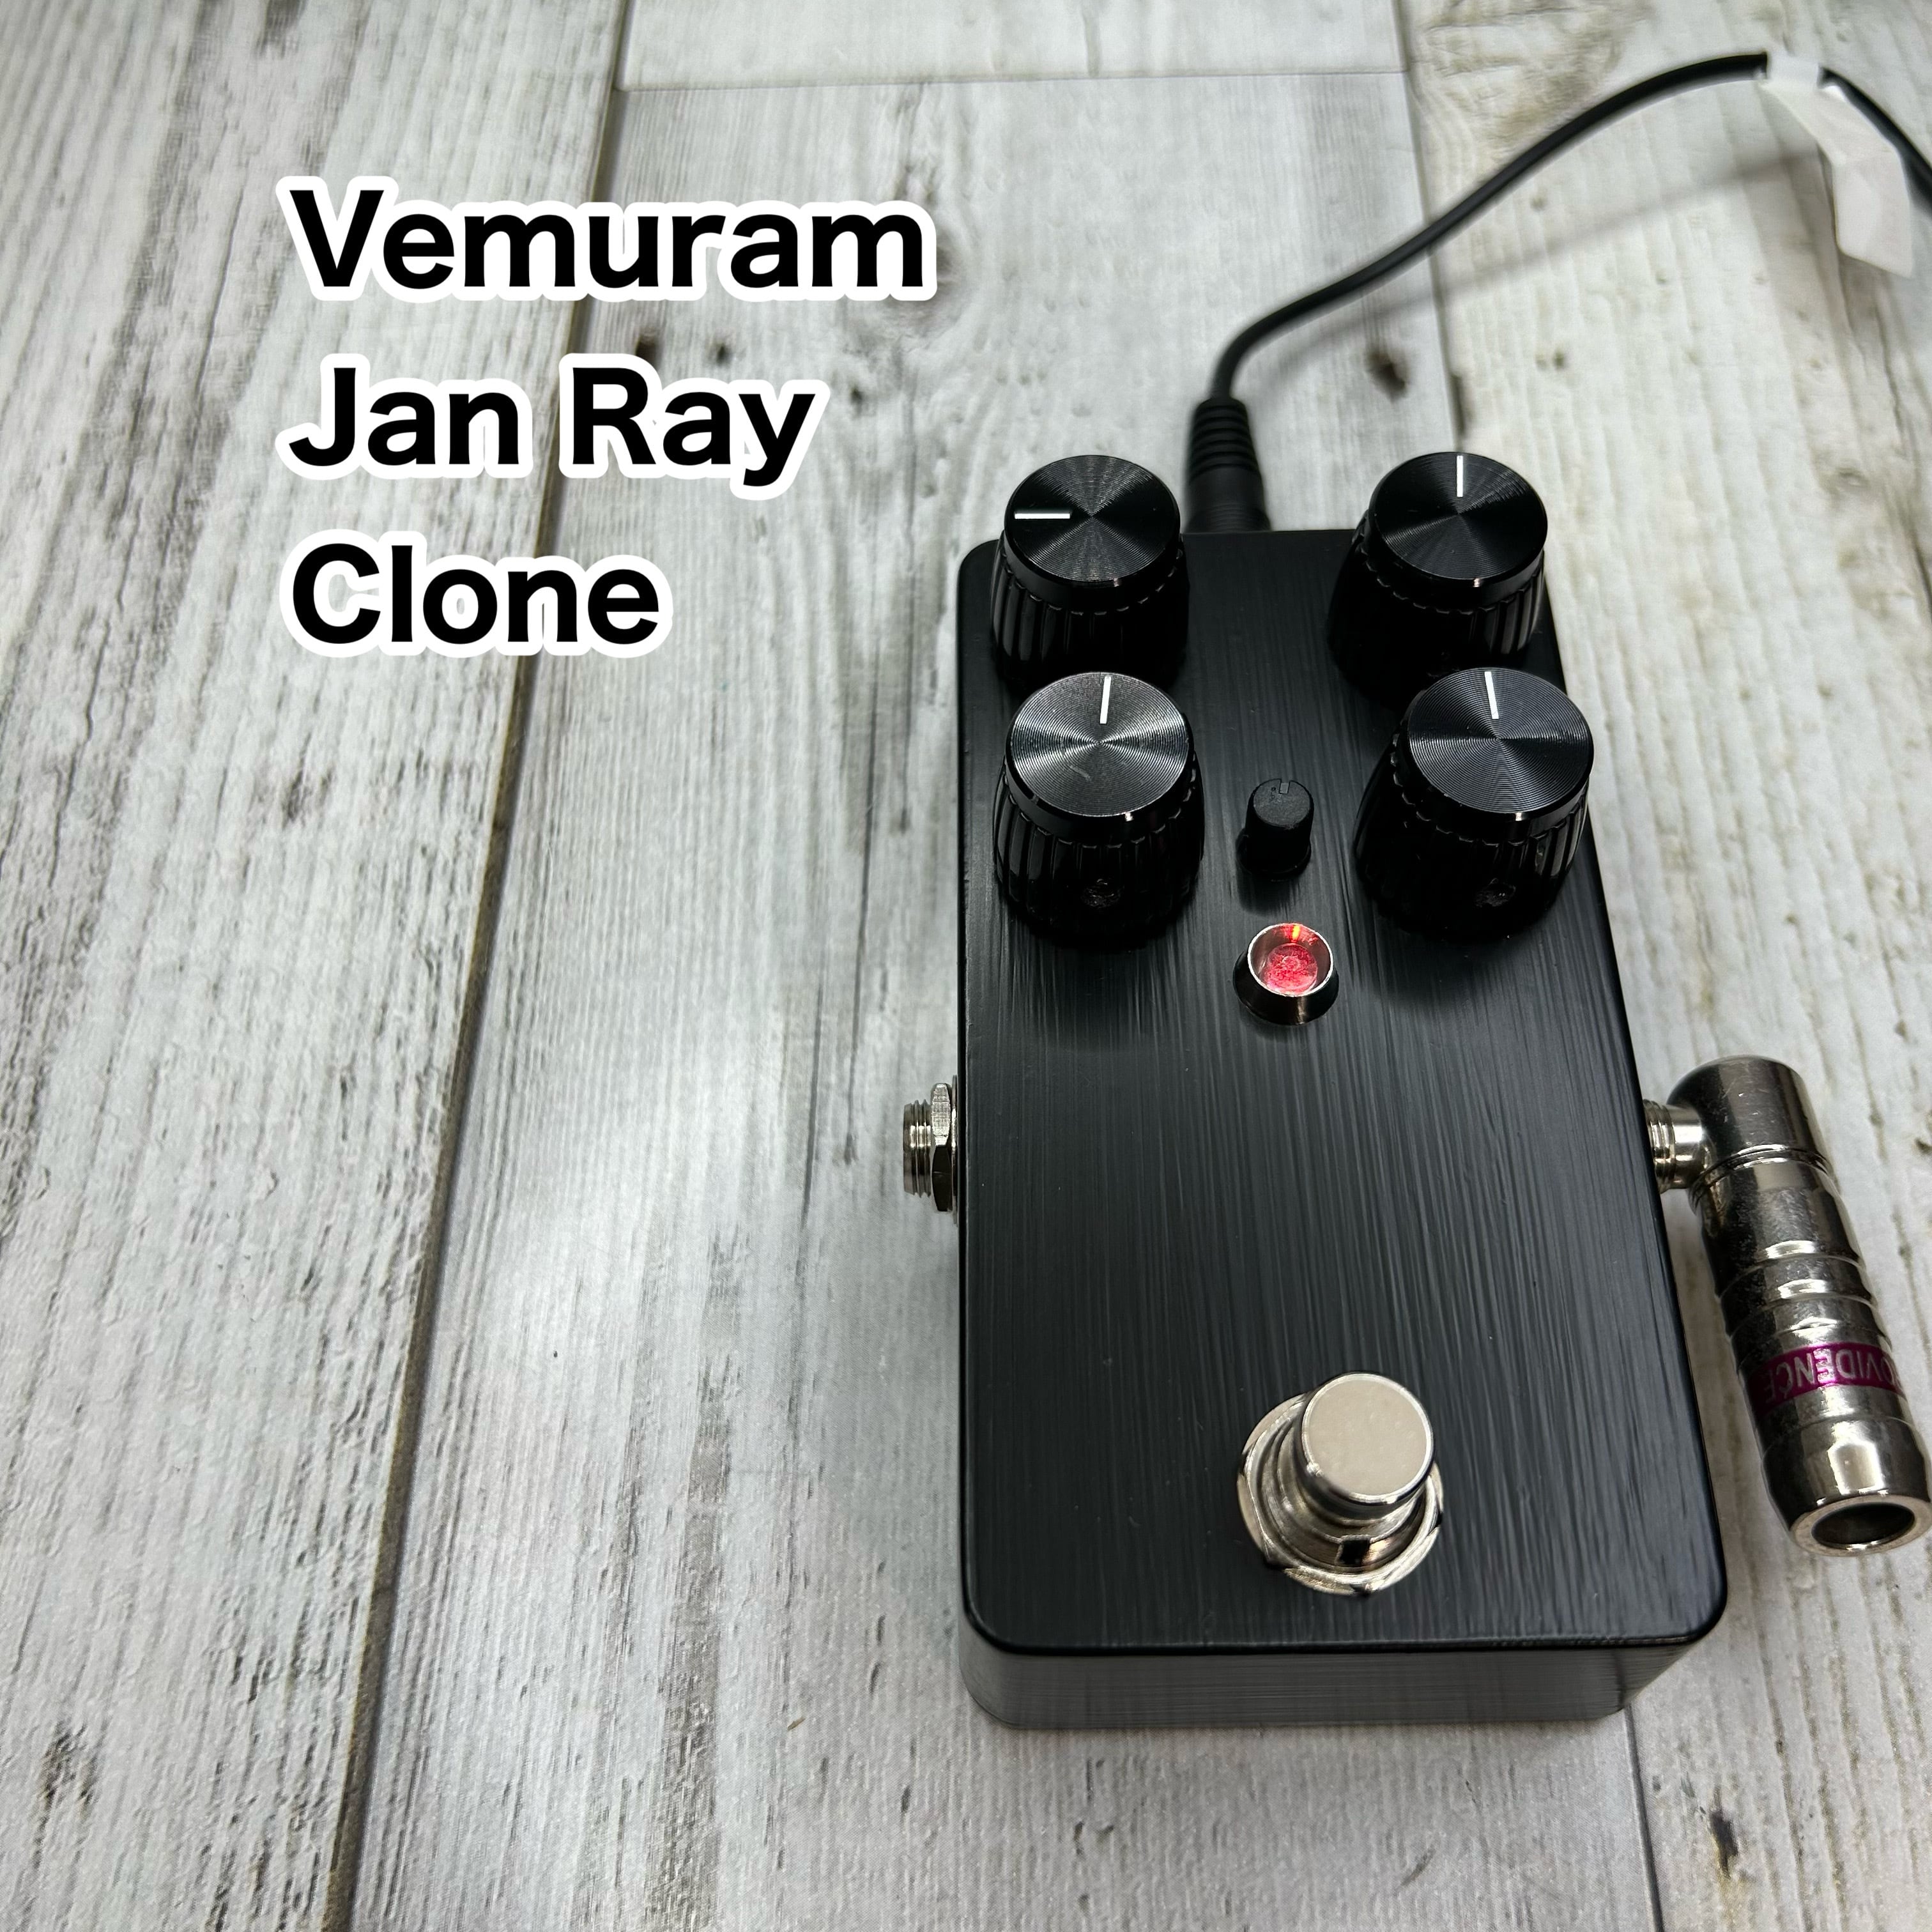 Vemuram Jan Ray clone